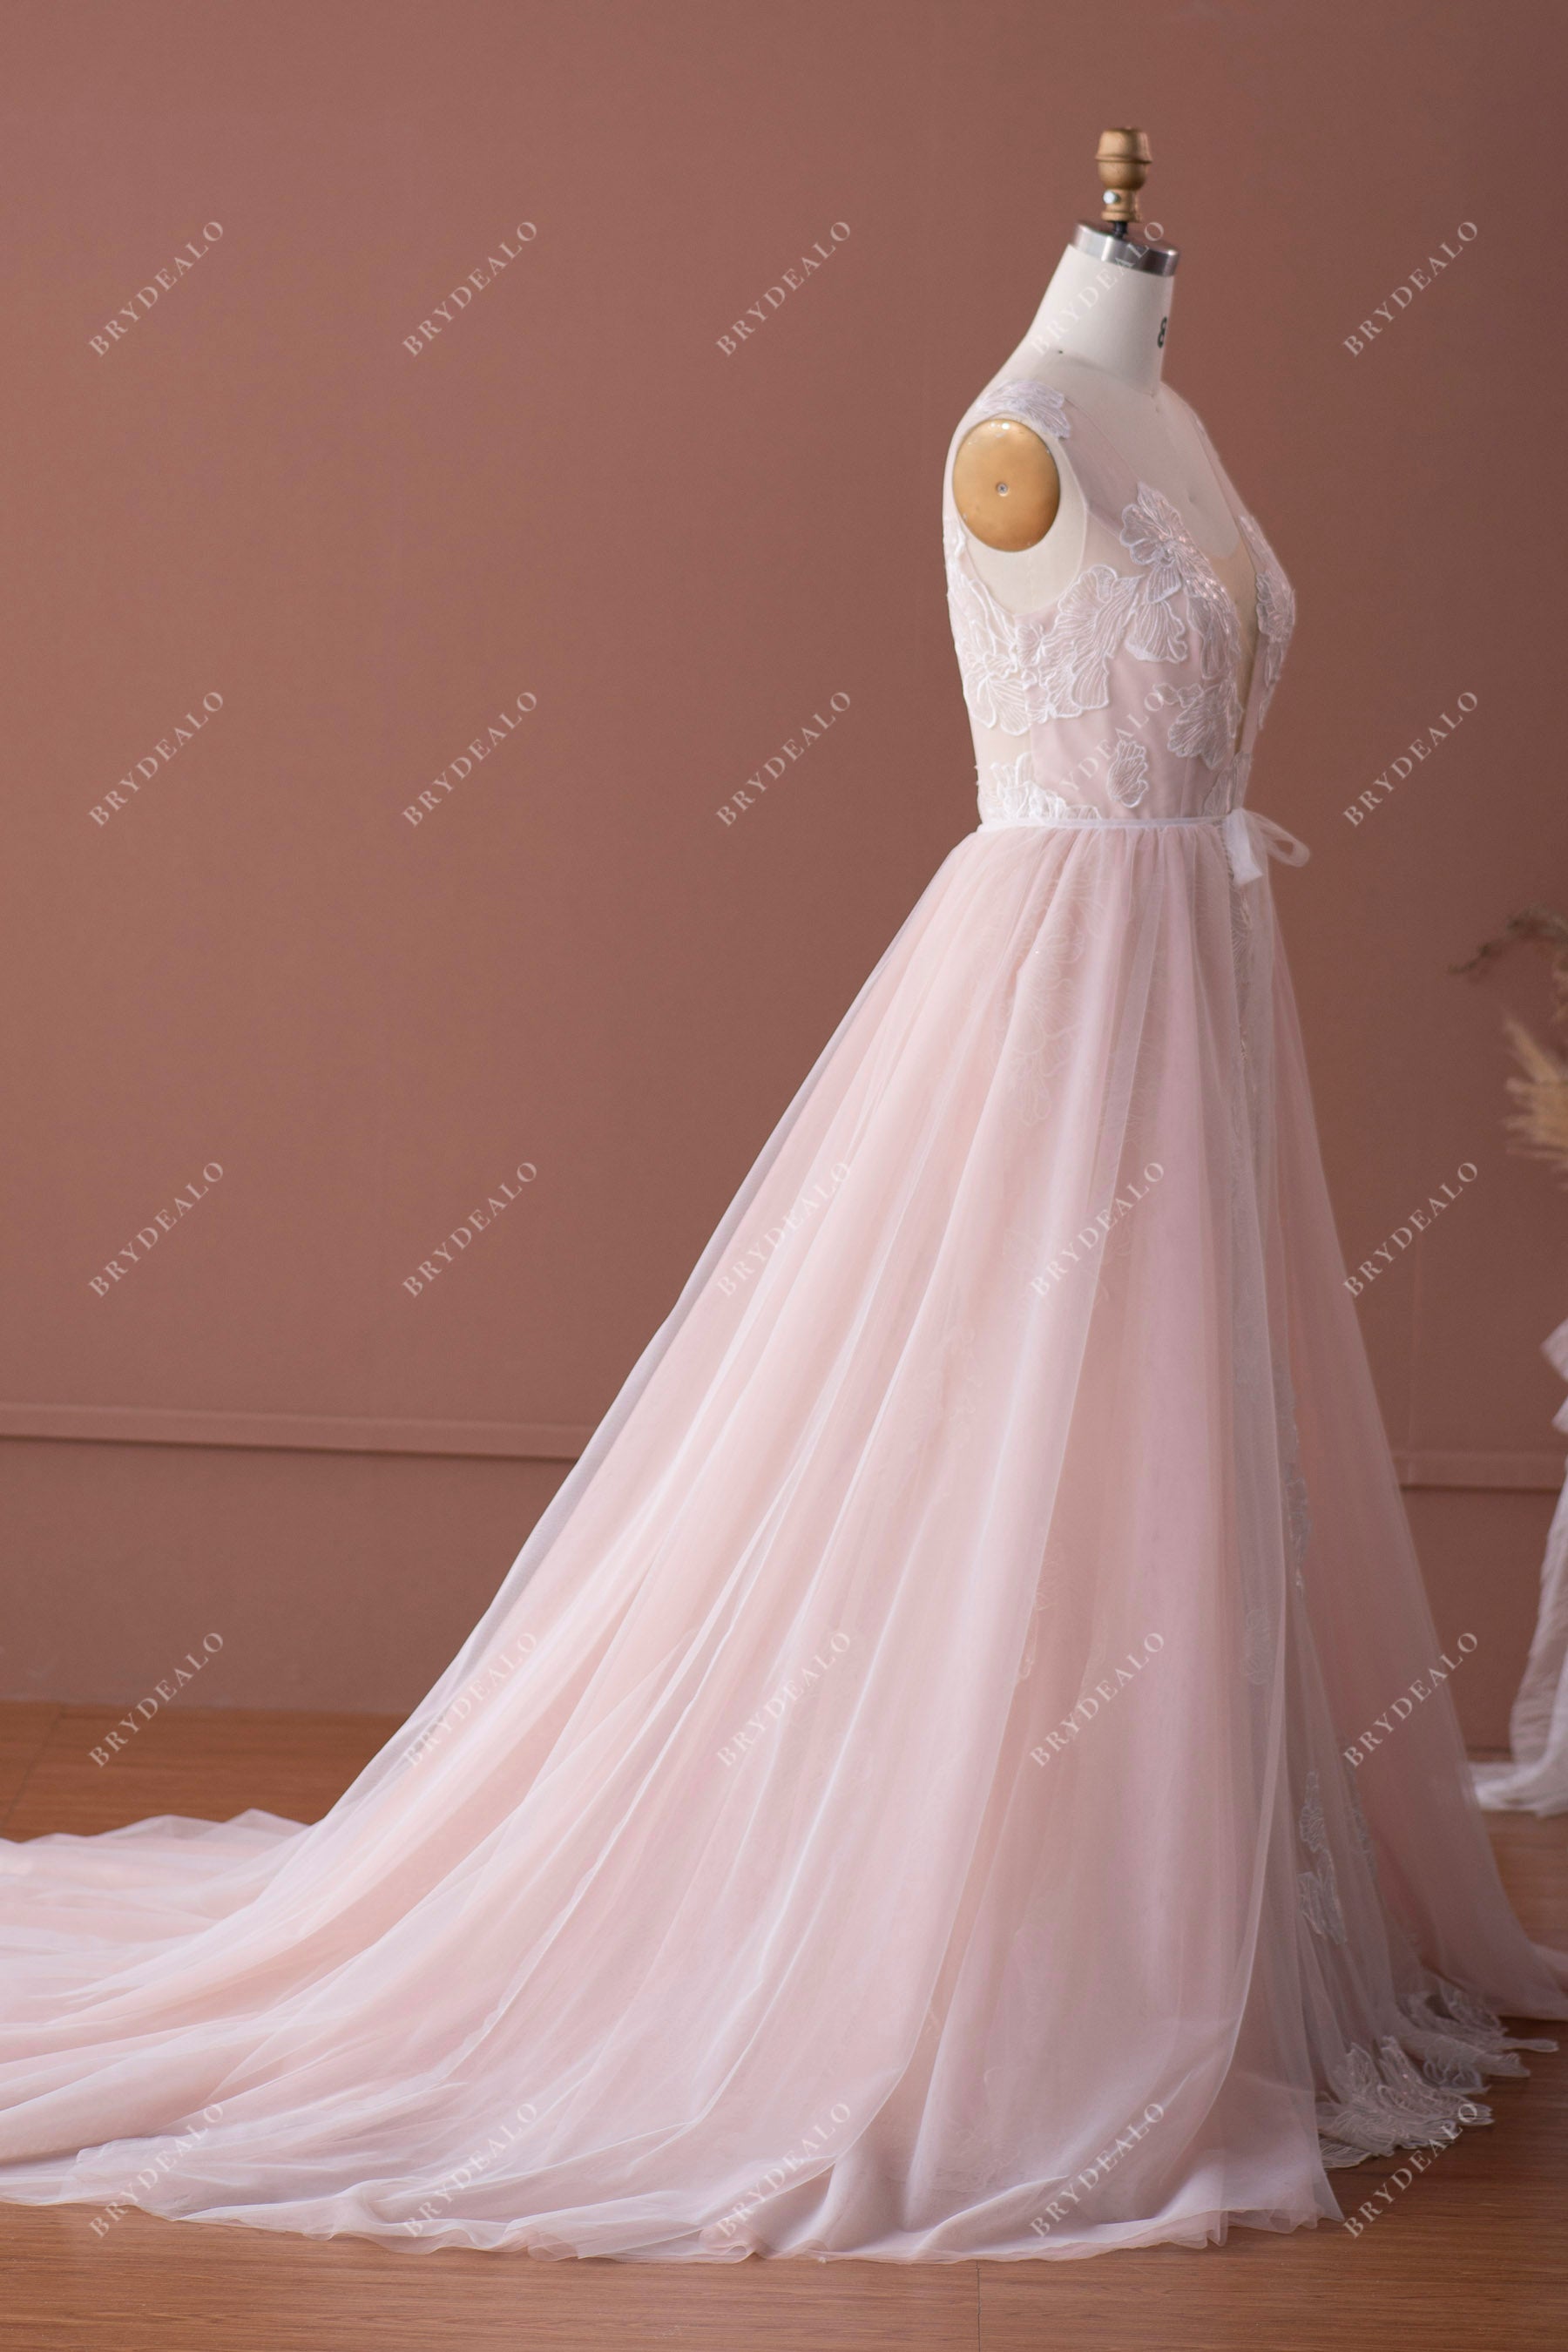 Overskirt Sleeveless Bridal Gown